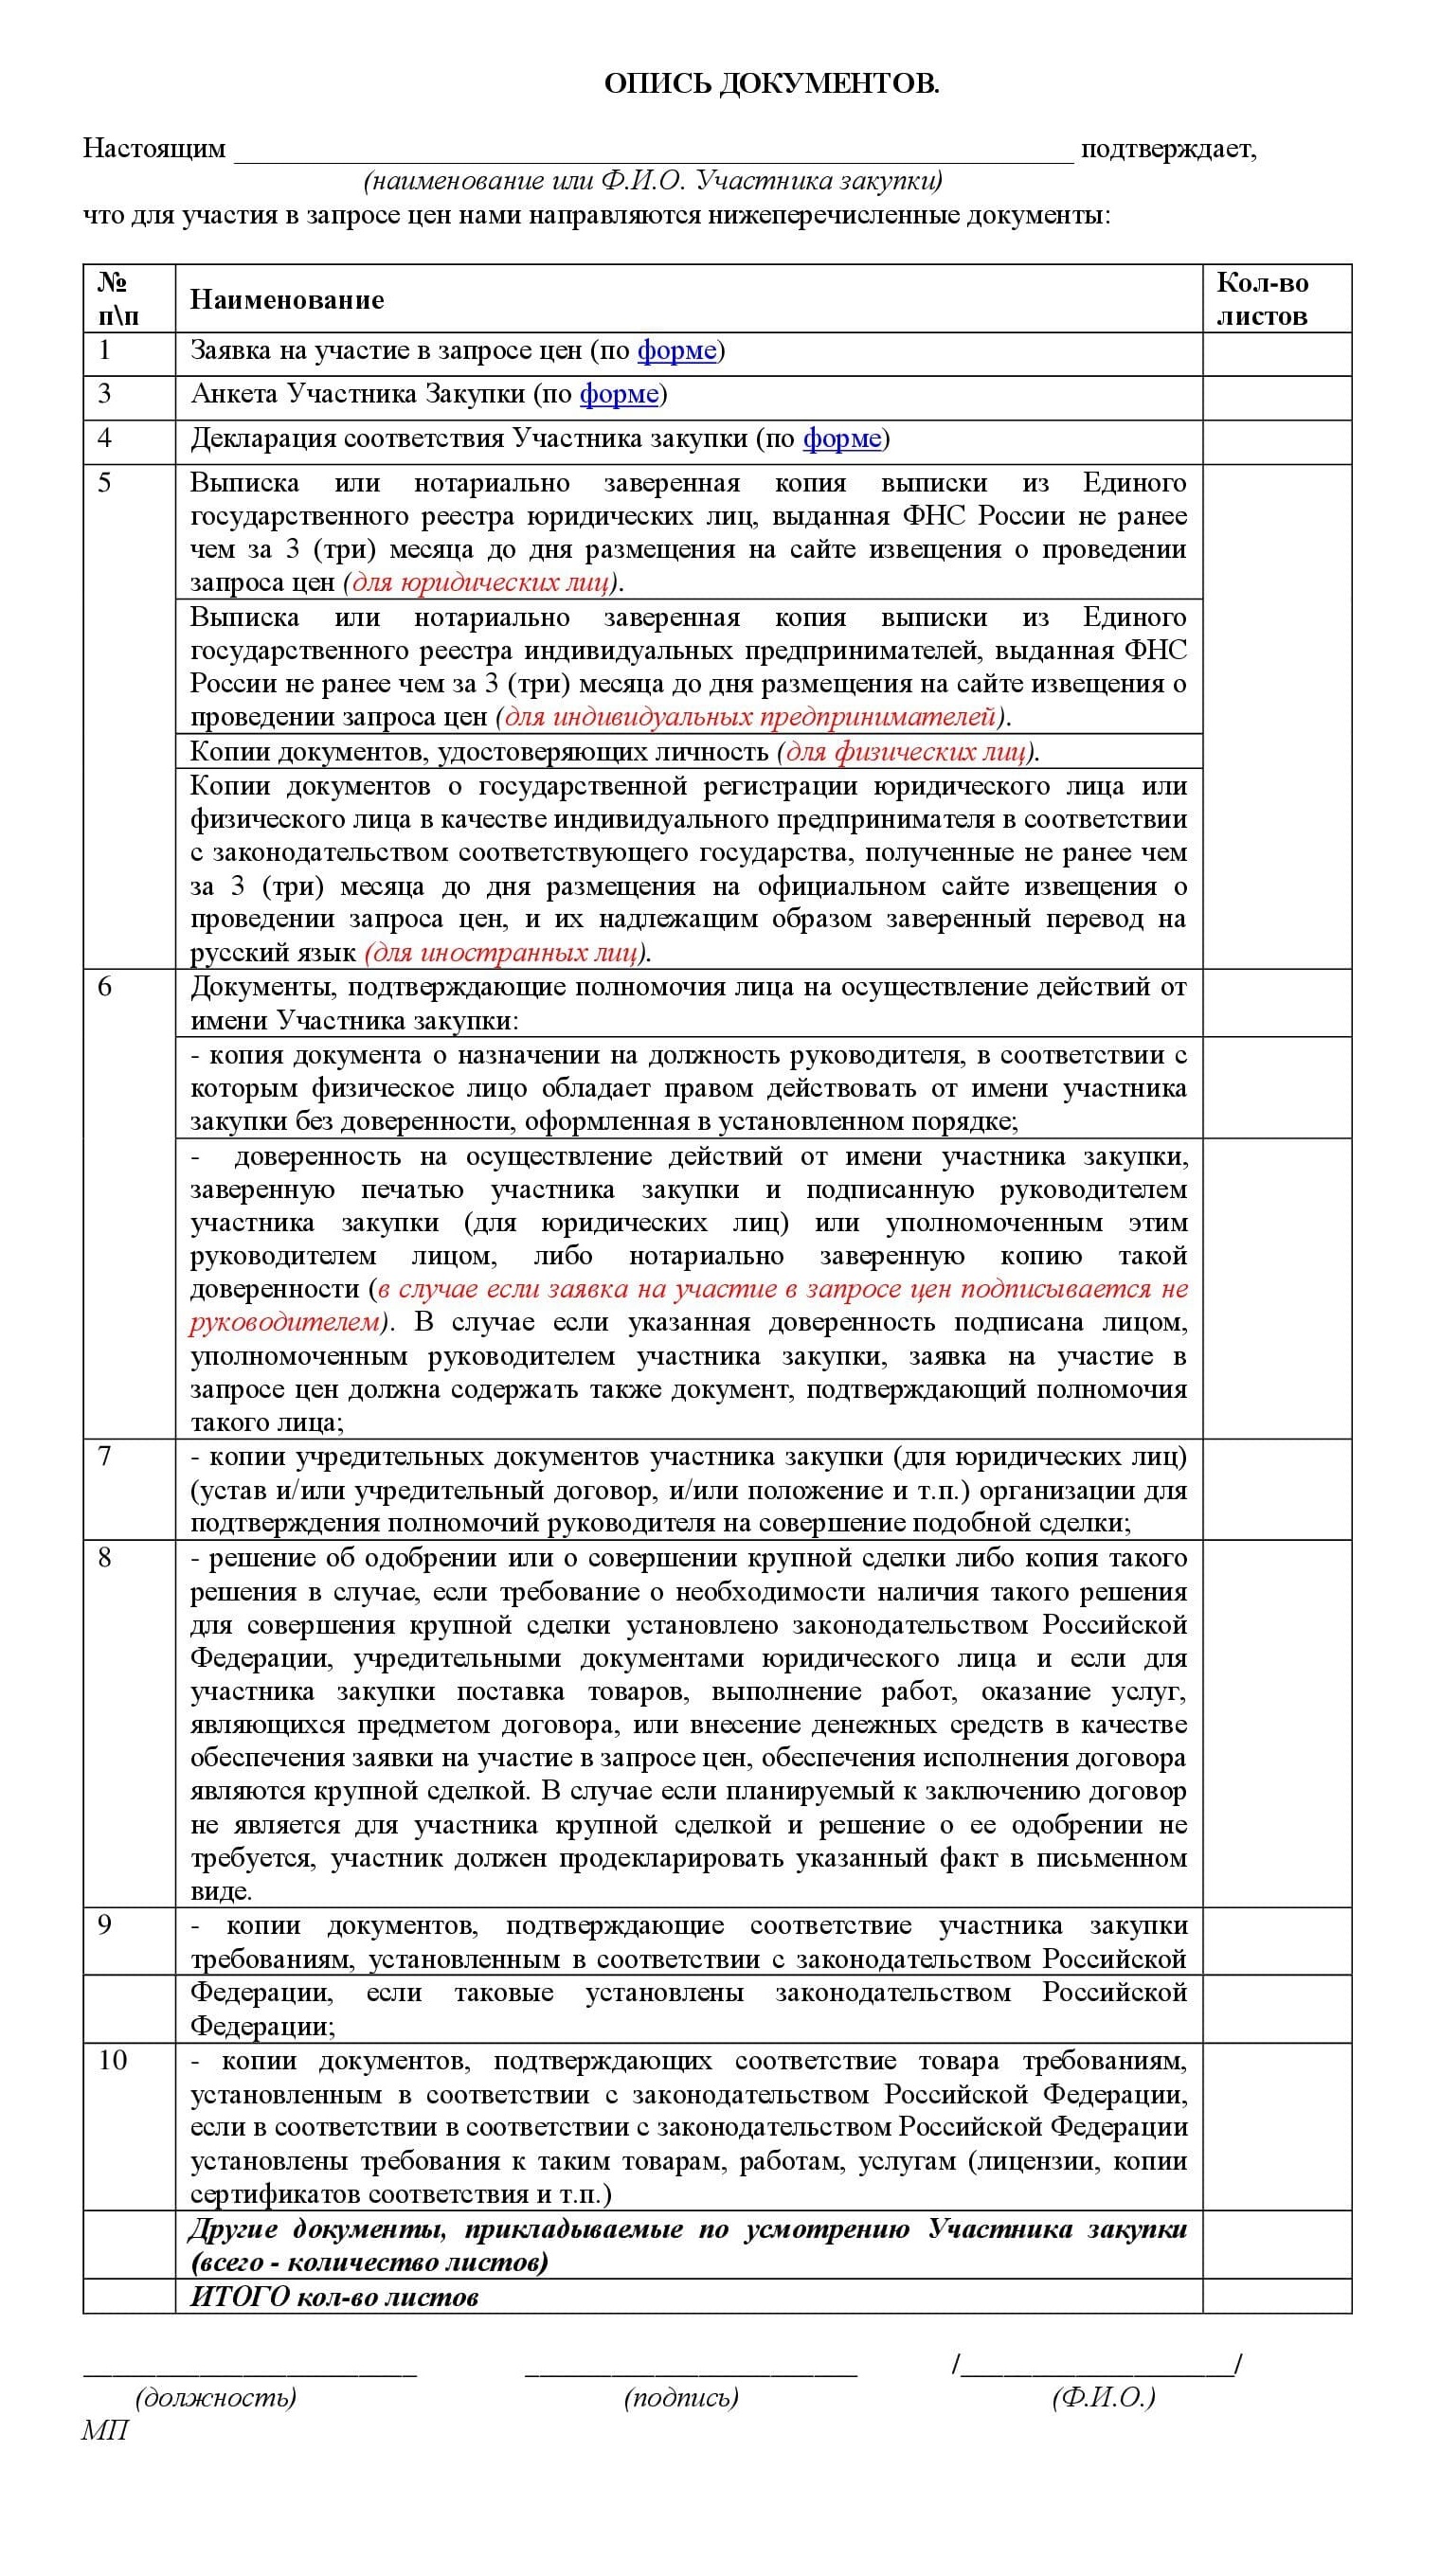 На сайте МФЦ Амурской области я нашла список документов для участия в закупке